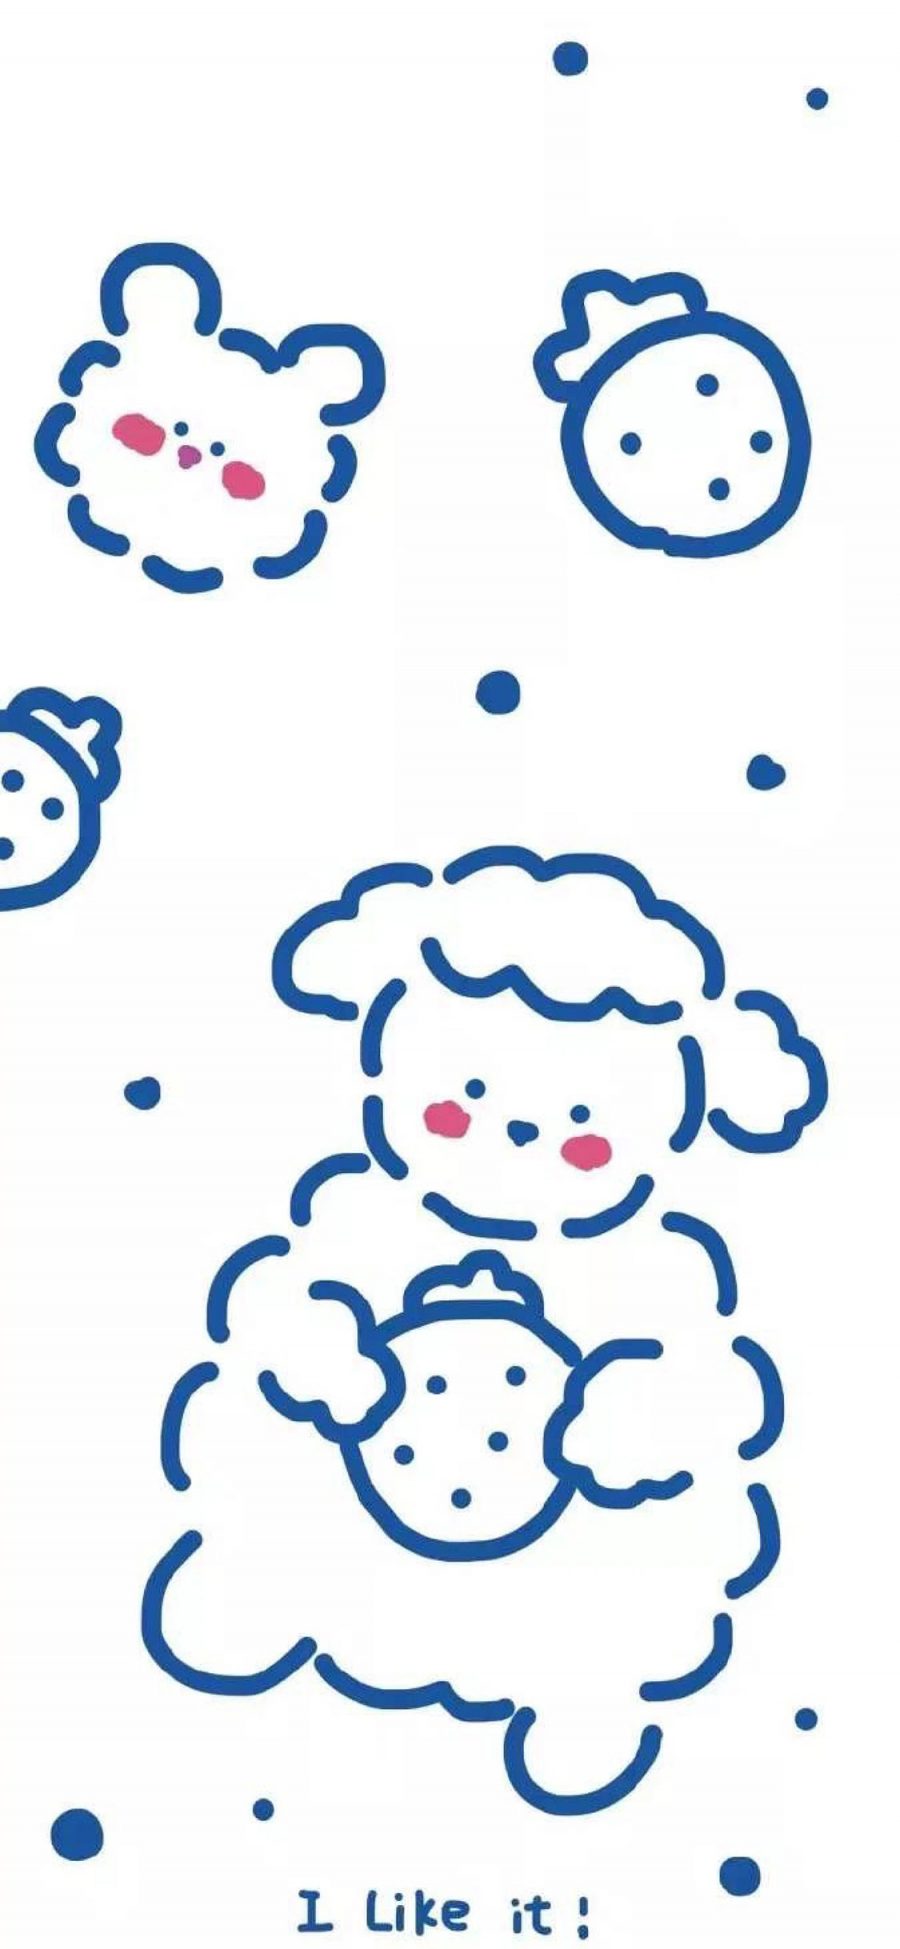 [2436×1125]小羊 可爱 草莓 蓝 简约 苹果手机动漫壁纸图片